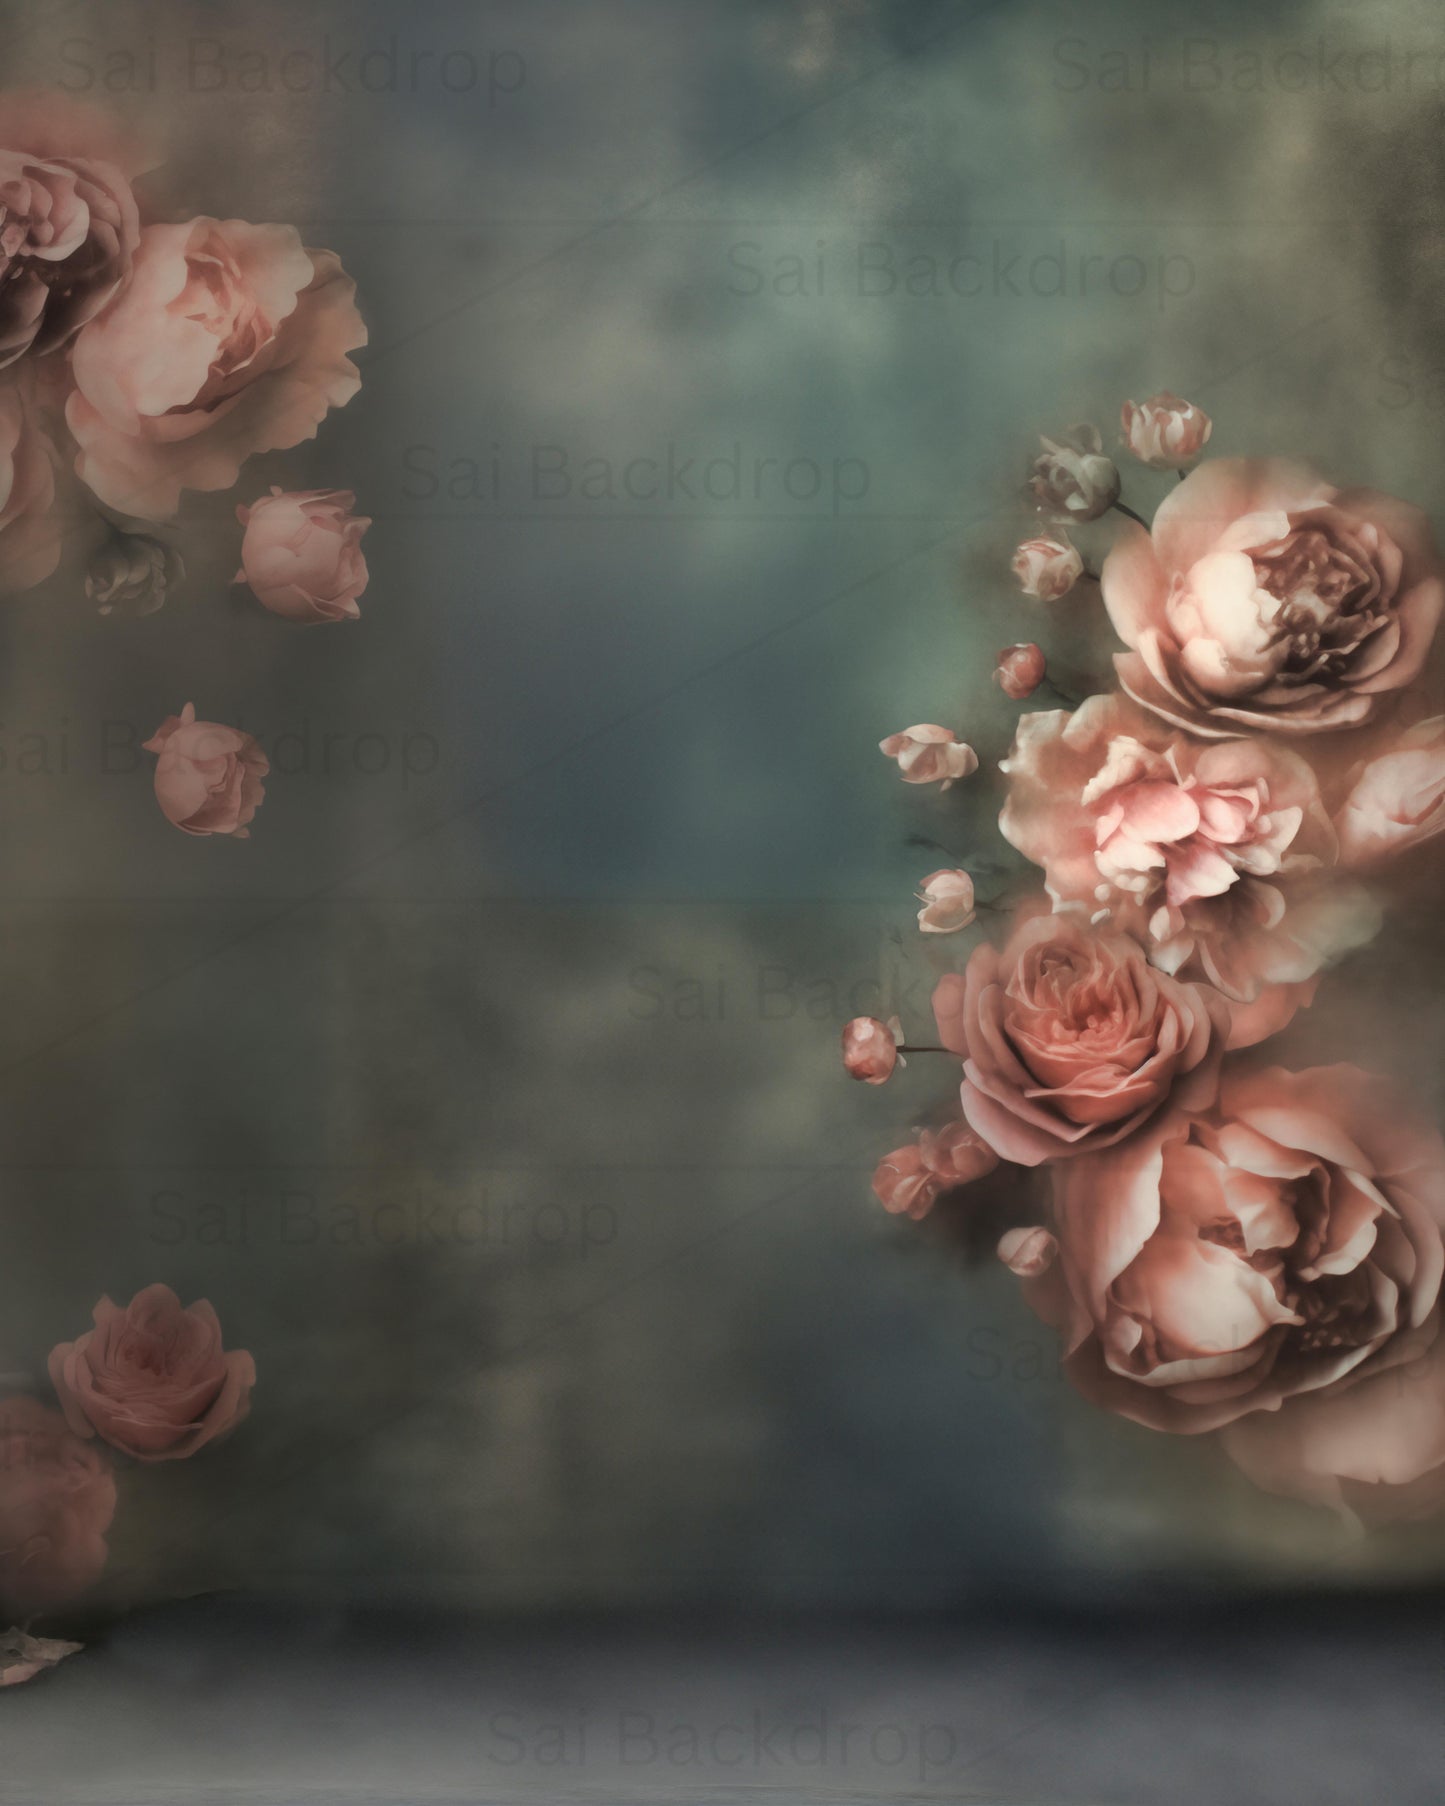 Dreamy Pastel Rose Cloud Theme Backdrop